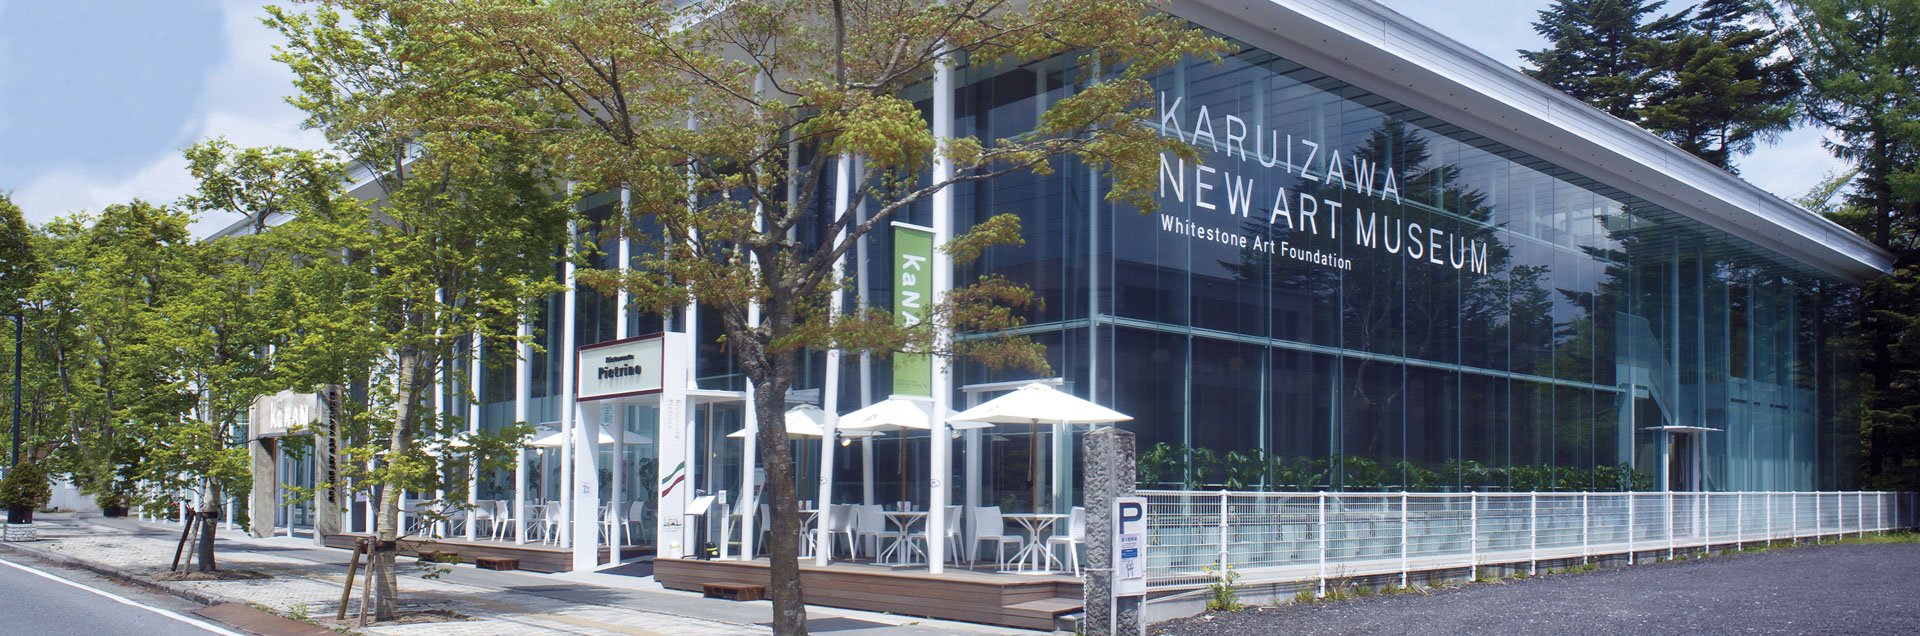 Karuizawa Gallery